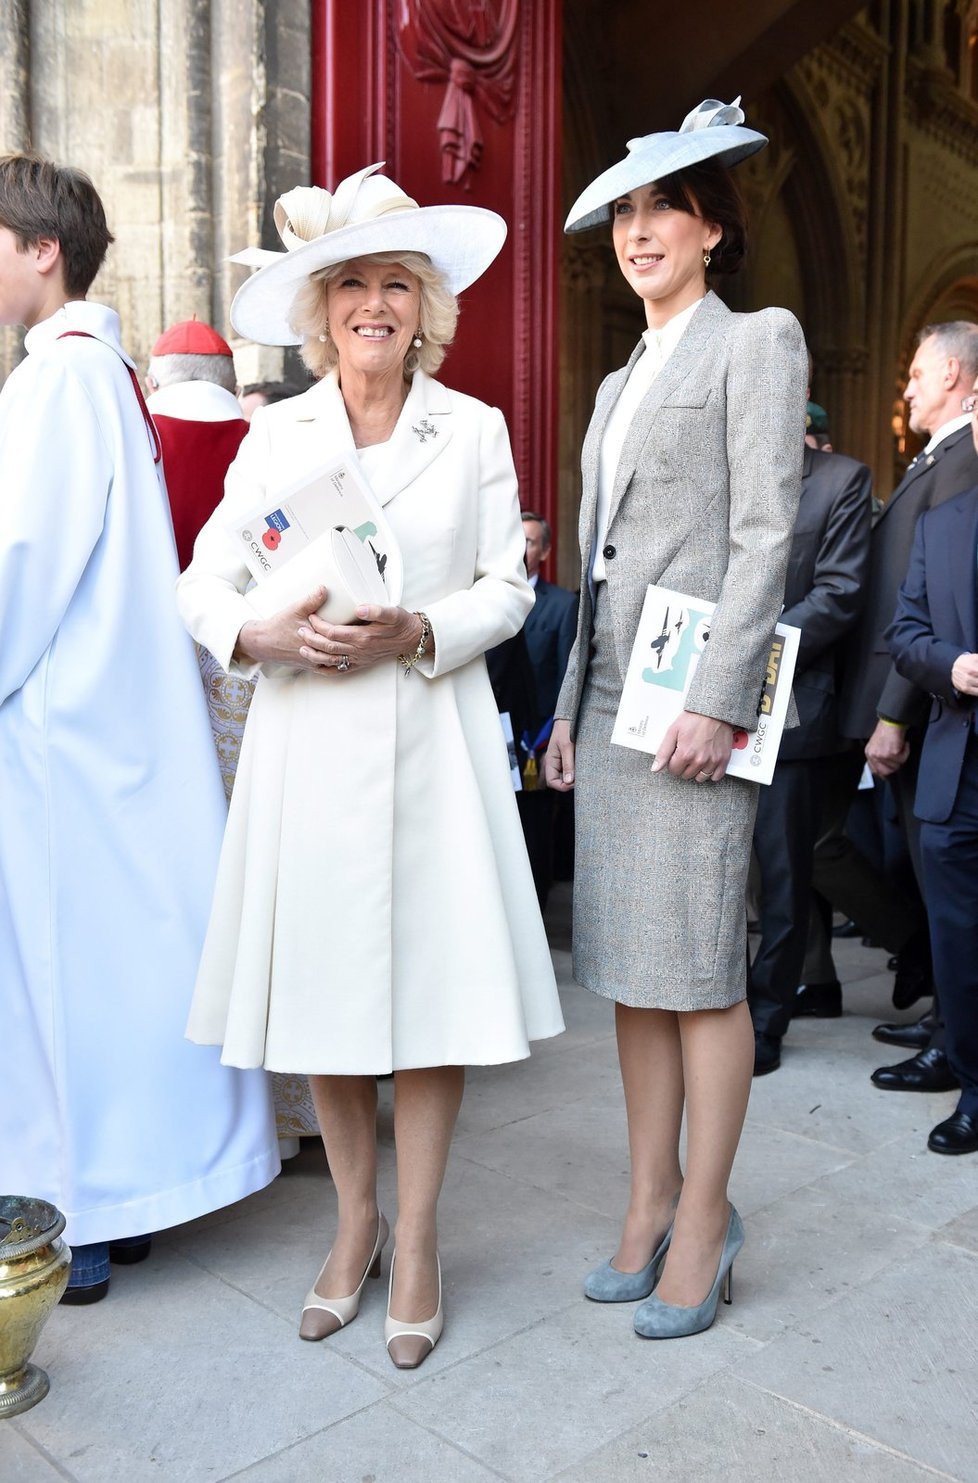 Charlesova manželka Camilla a Samantha Cameron, žena britského premiéra, při oslavách 70. výročí Dne D